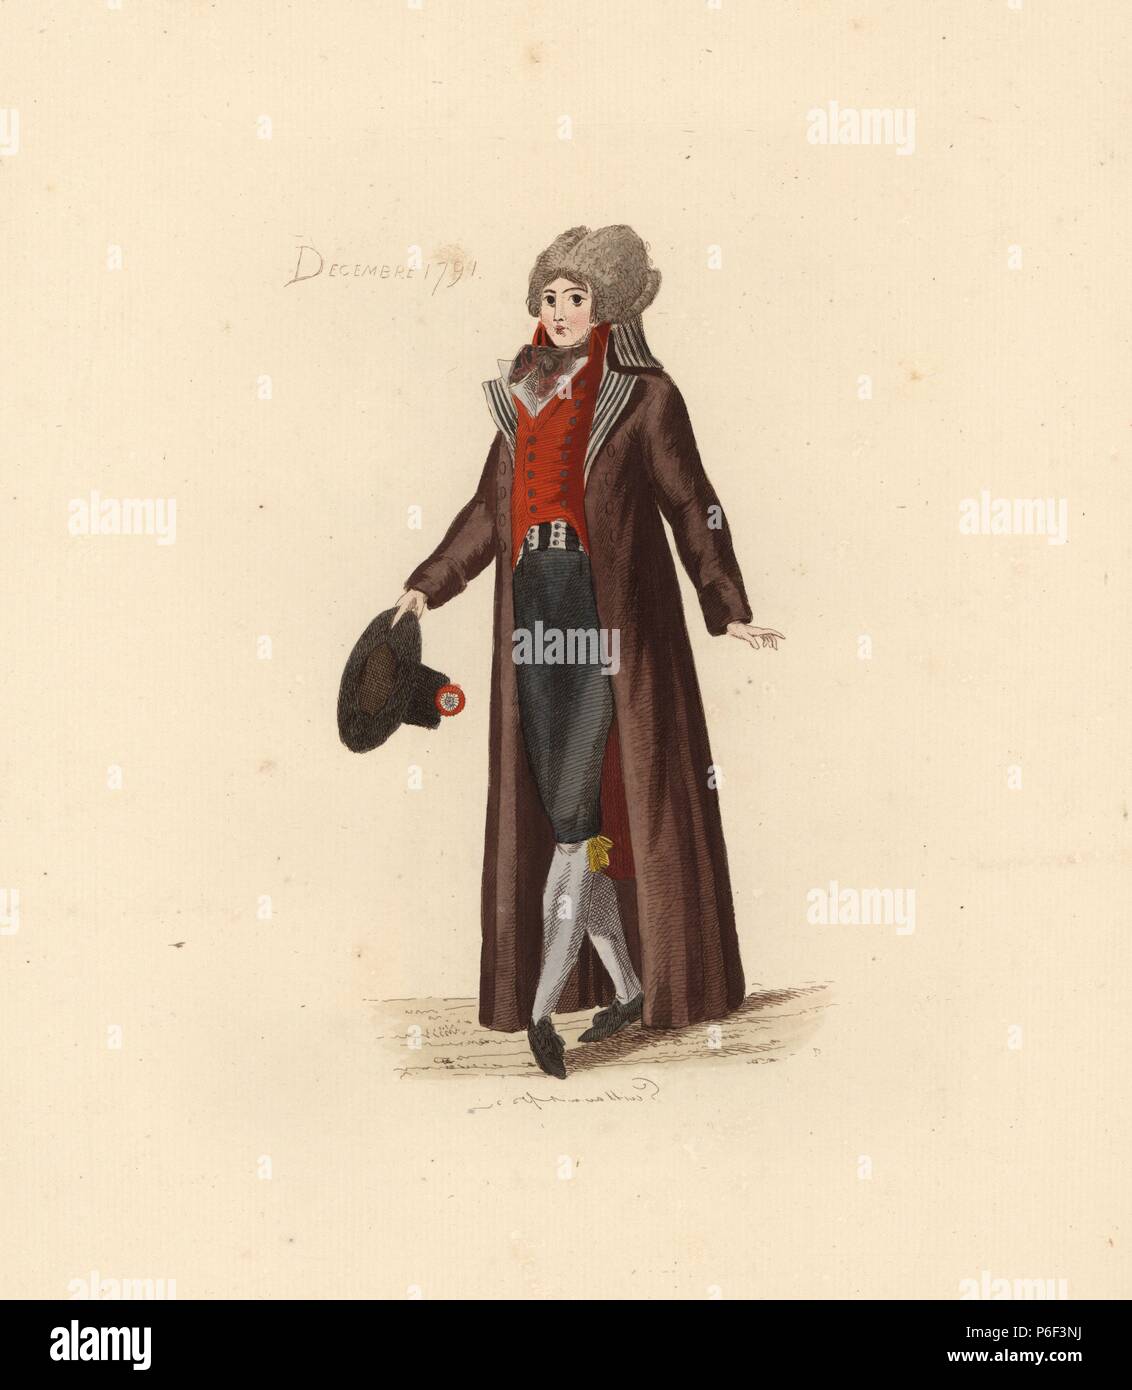 La mode homme français de décembre 1791. Il porte une grande perruque, long  manteau, gilet gilet et cravat (), culottes et jarretelles. Il est  titulaire d'un chapeau à cocarde tricolore. Gravure coloriée